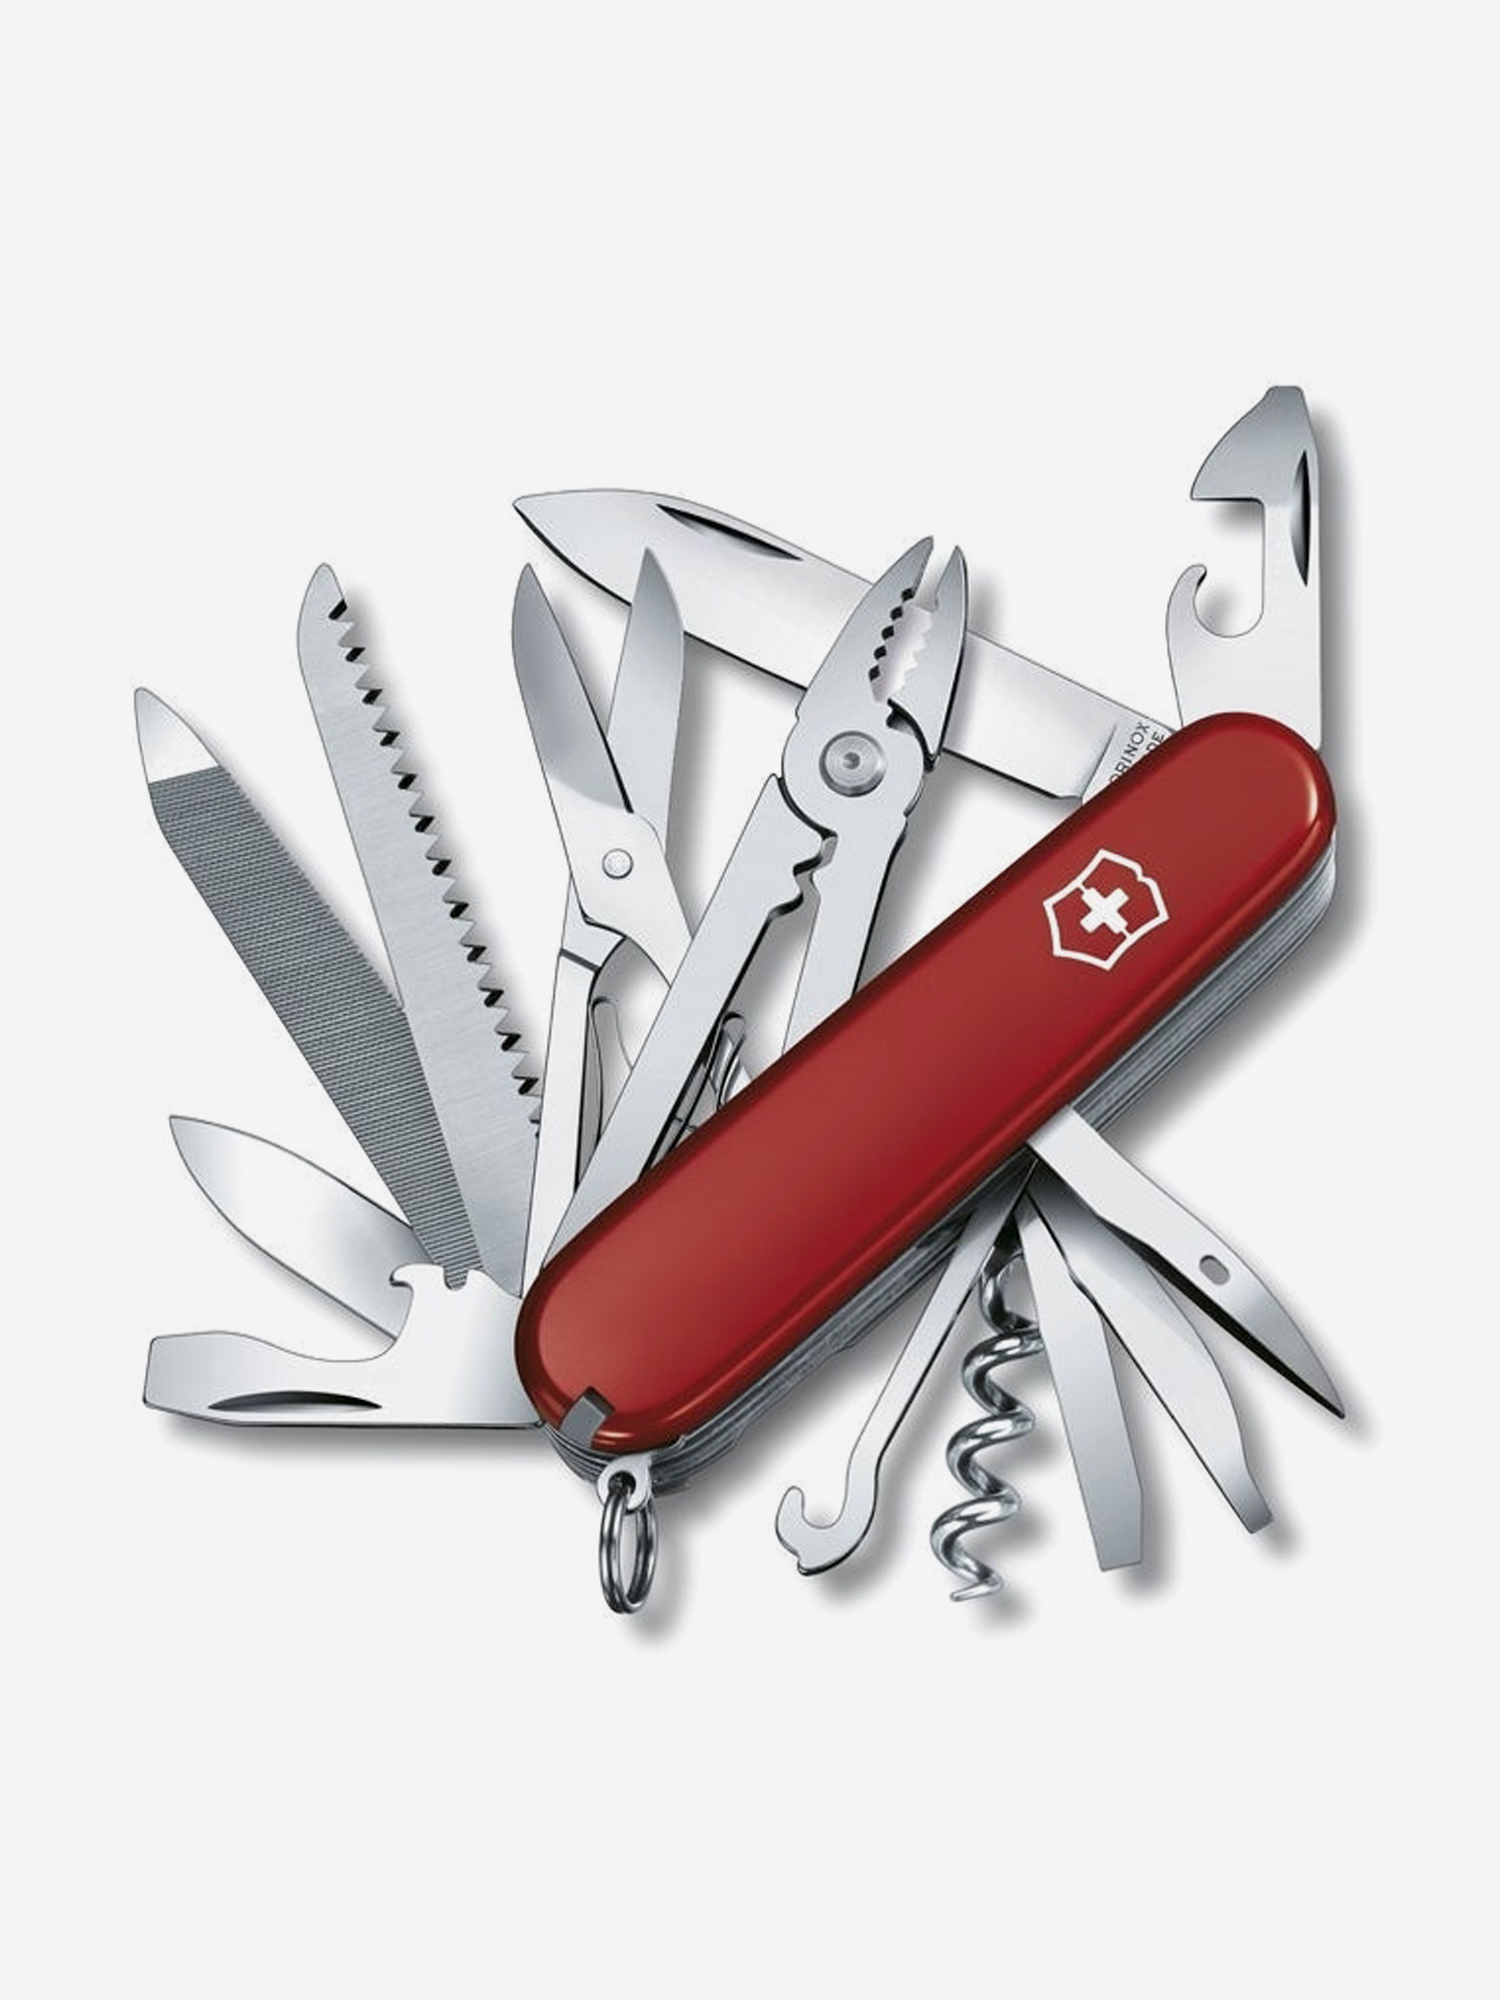 Нож складной Victorinox Handyman, 91 мм, 24 функции, Красный нож брелок victorinox classic minichamp 58 мм 16 функций красный